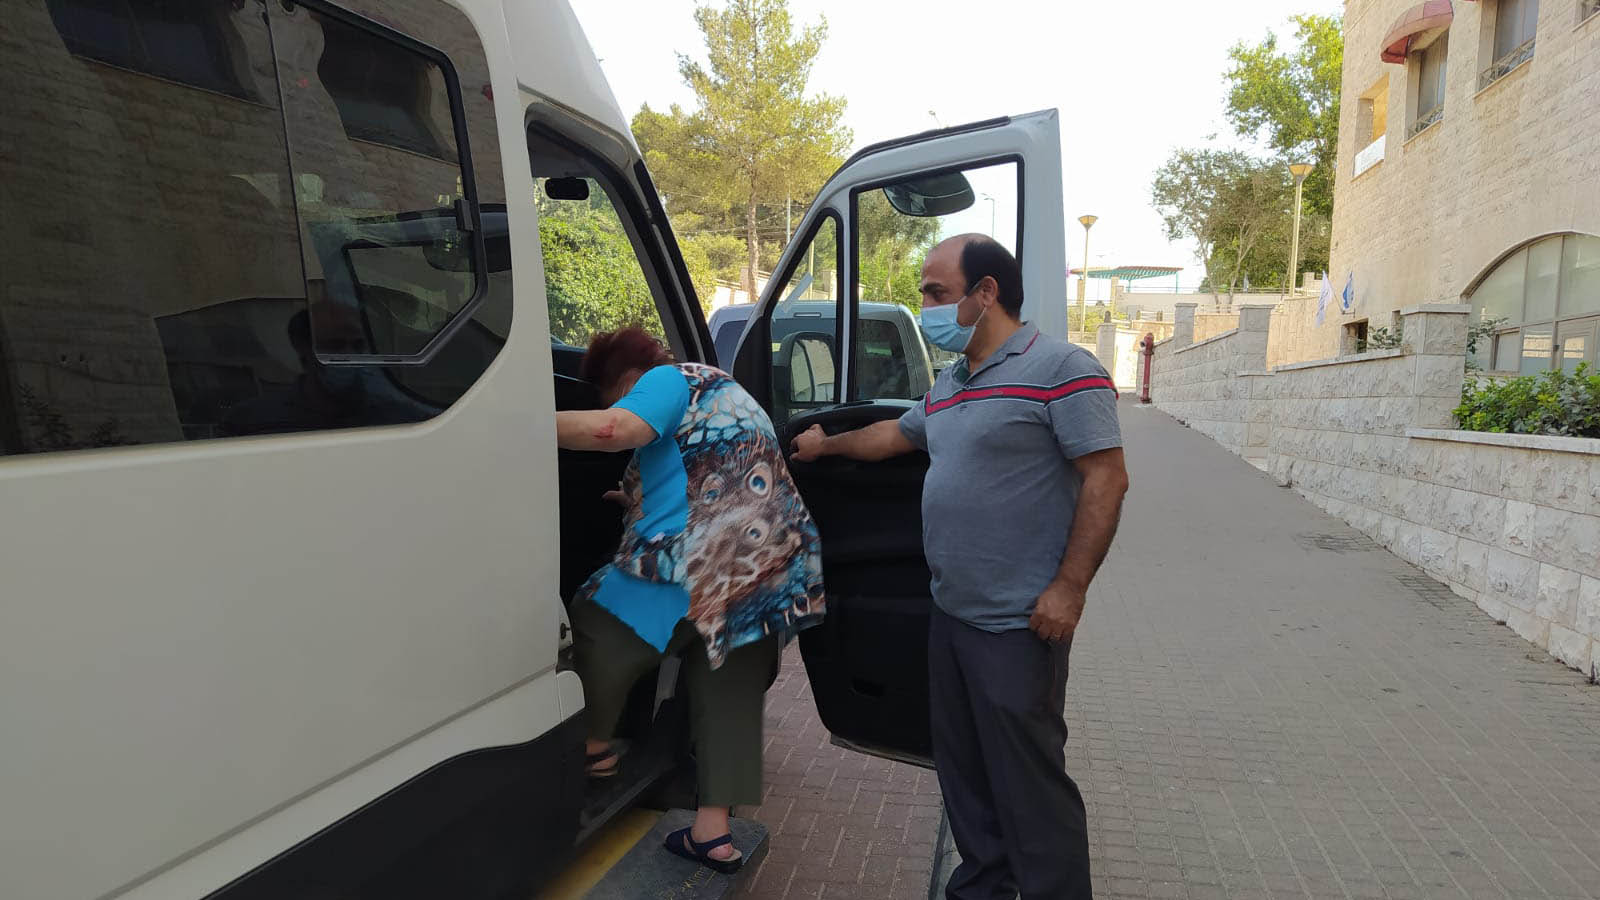 אמיר חנוך, אחראי על ההסעות במנהל החינוך, מסייע לתושבת לחזור לביתה בבטחה (צילום: יהל פרג')